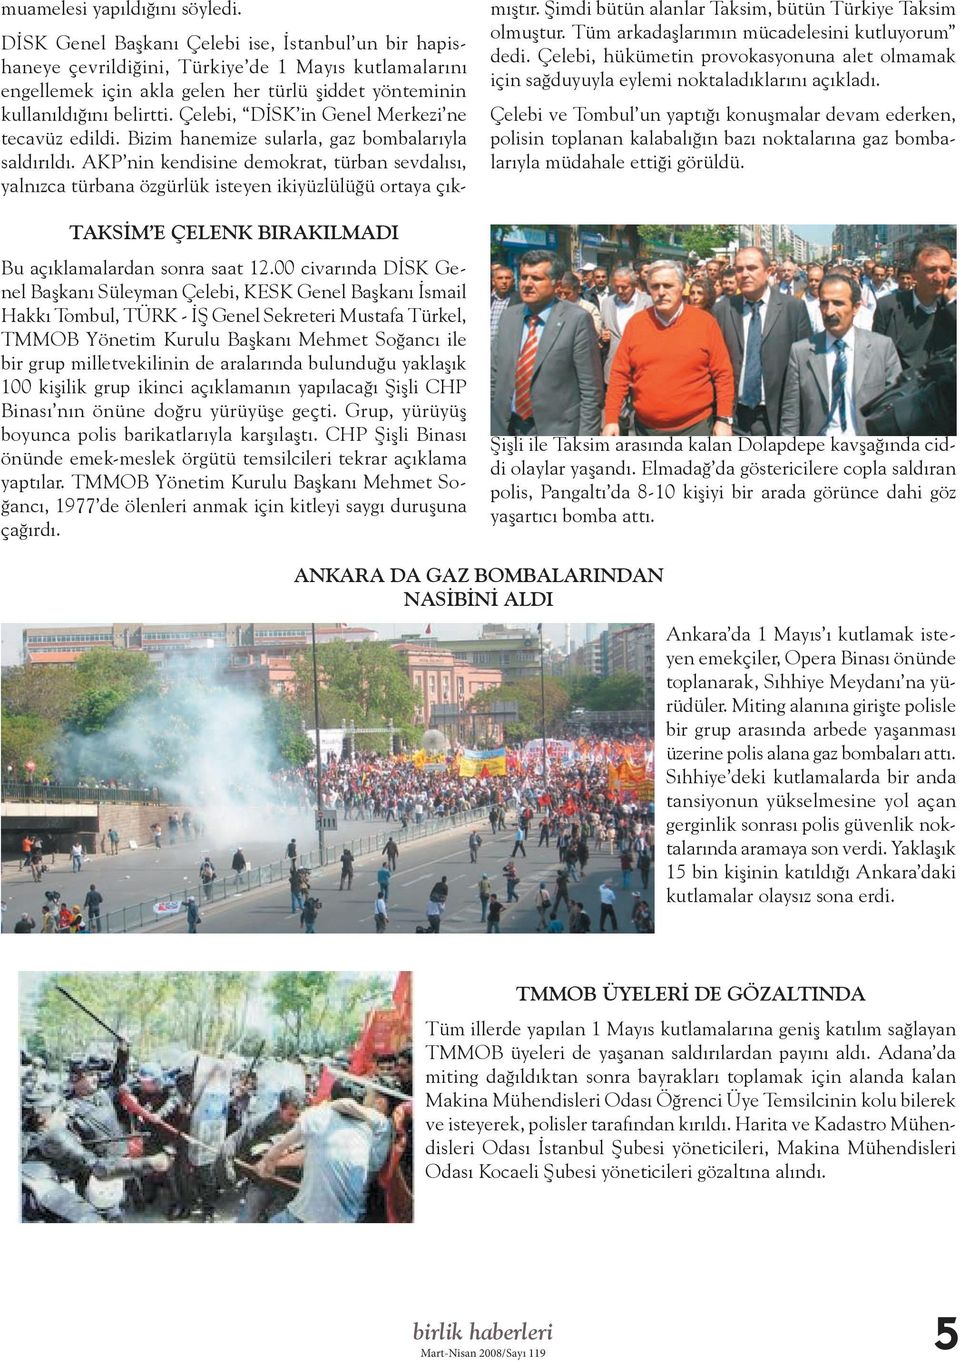 milletvekilinin de aralarında bulunduğu yaklaşık 100 kişilik grup ikinci açıklamanın yapılacağı Şişli CHP Binası nın önüne doğru yürüyüşe geçti. Grup, yürüyüş boyunca polis barikatlarıyla karşılaştı.